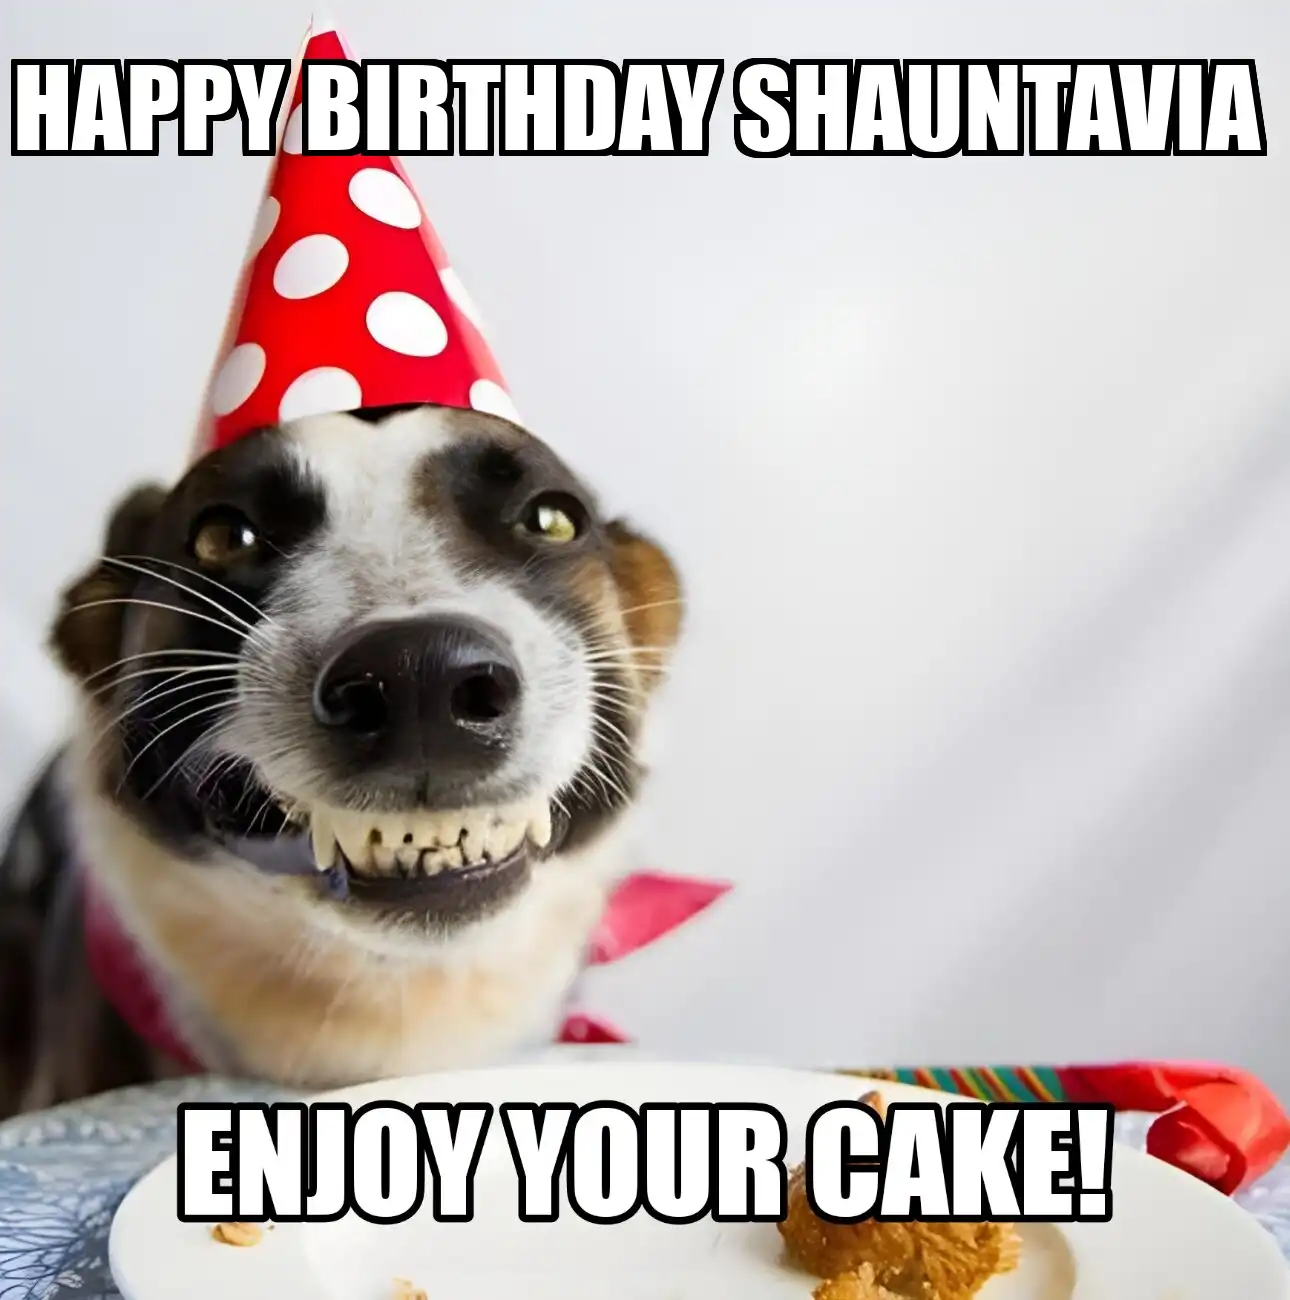 Happy Birthday Shauntavia Enjoy Your Cake Dog Meme